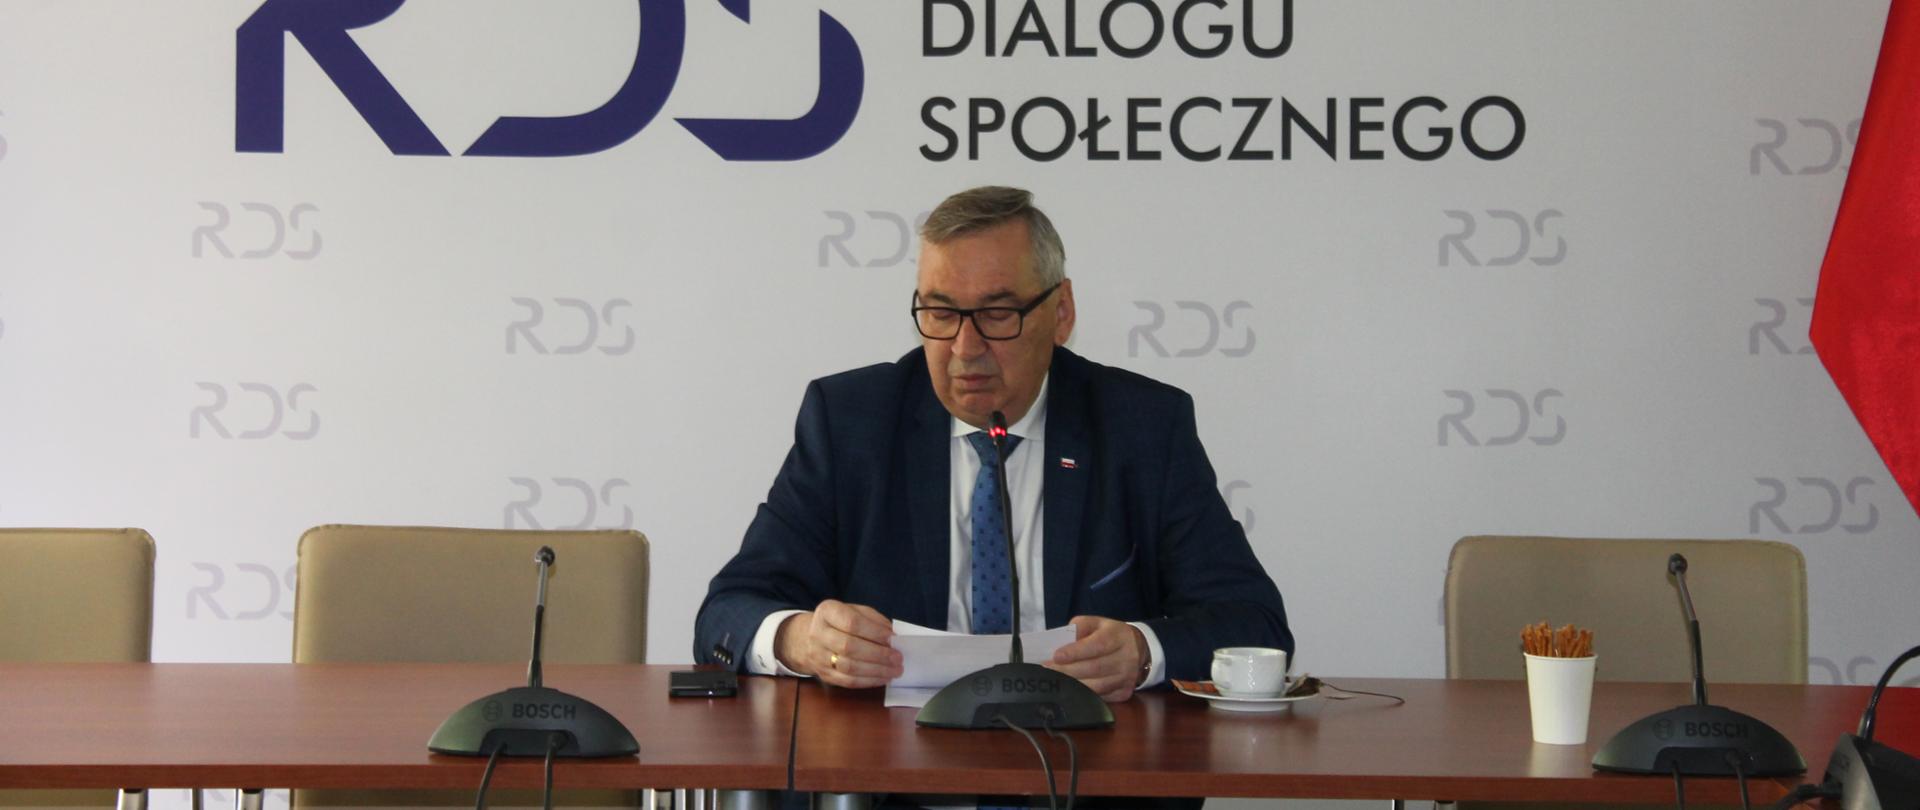 Na zdjęciu widnieje stół prezydialny za którym siedzi wiceminister Rodziny i polityki społecznej – Stanisław Szwed, który prowadzi spotkanie. W tle znajduje się baner z napisem Rada Dialogu Społecznego.